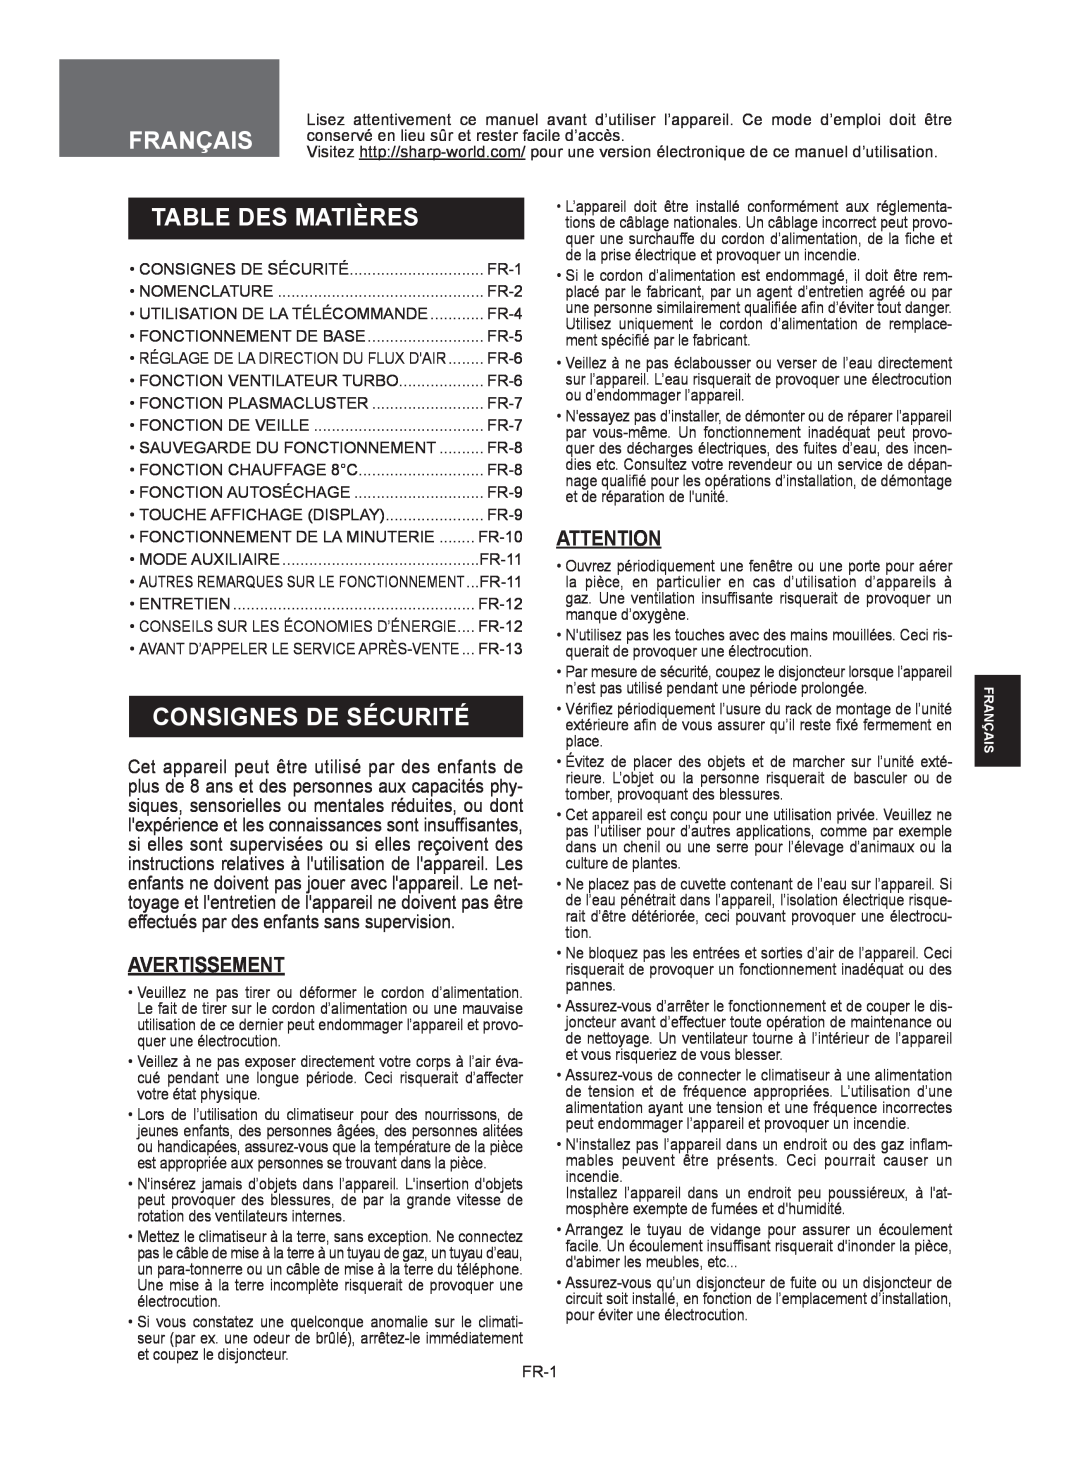 Sharp AY-XP9RMR Table Des Matières, Consignes De Sécurité, Avertissement, plus de 8 ans et des personnes aux capacités phy 